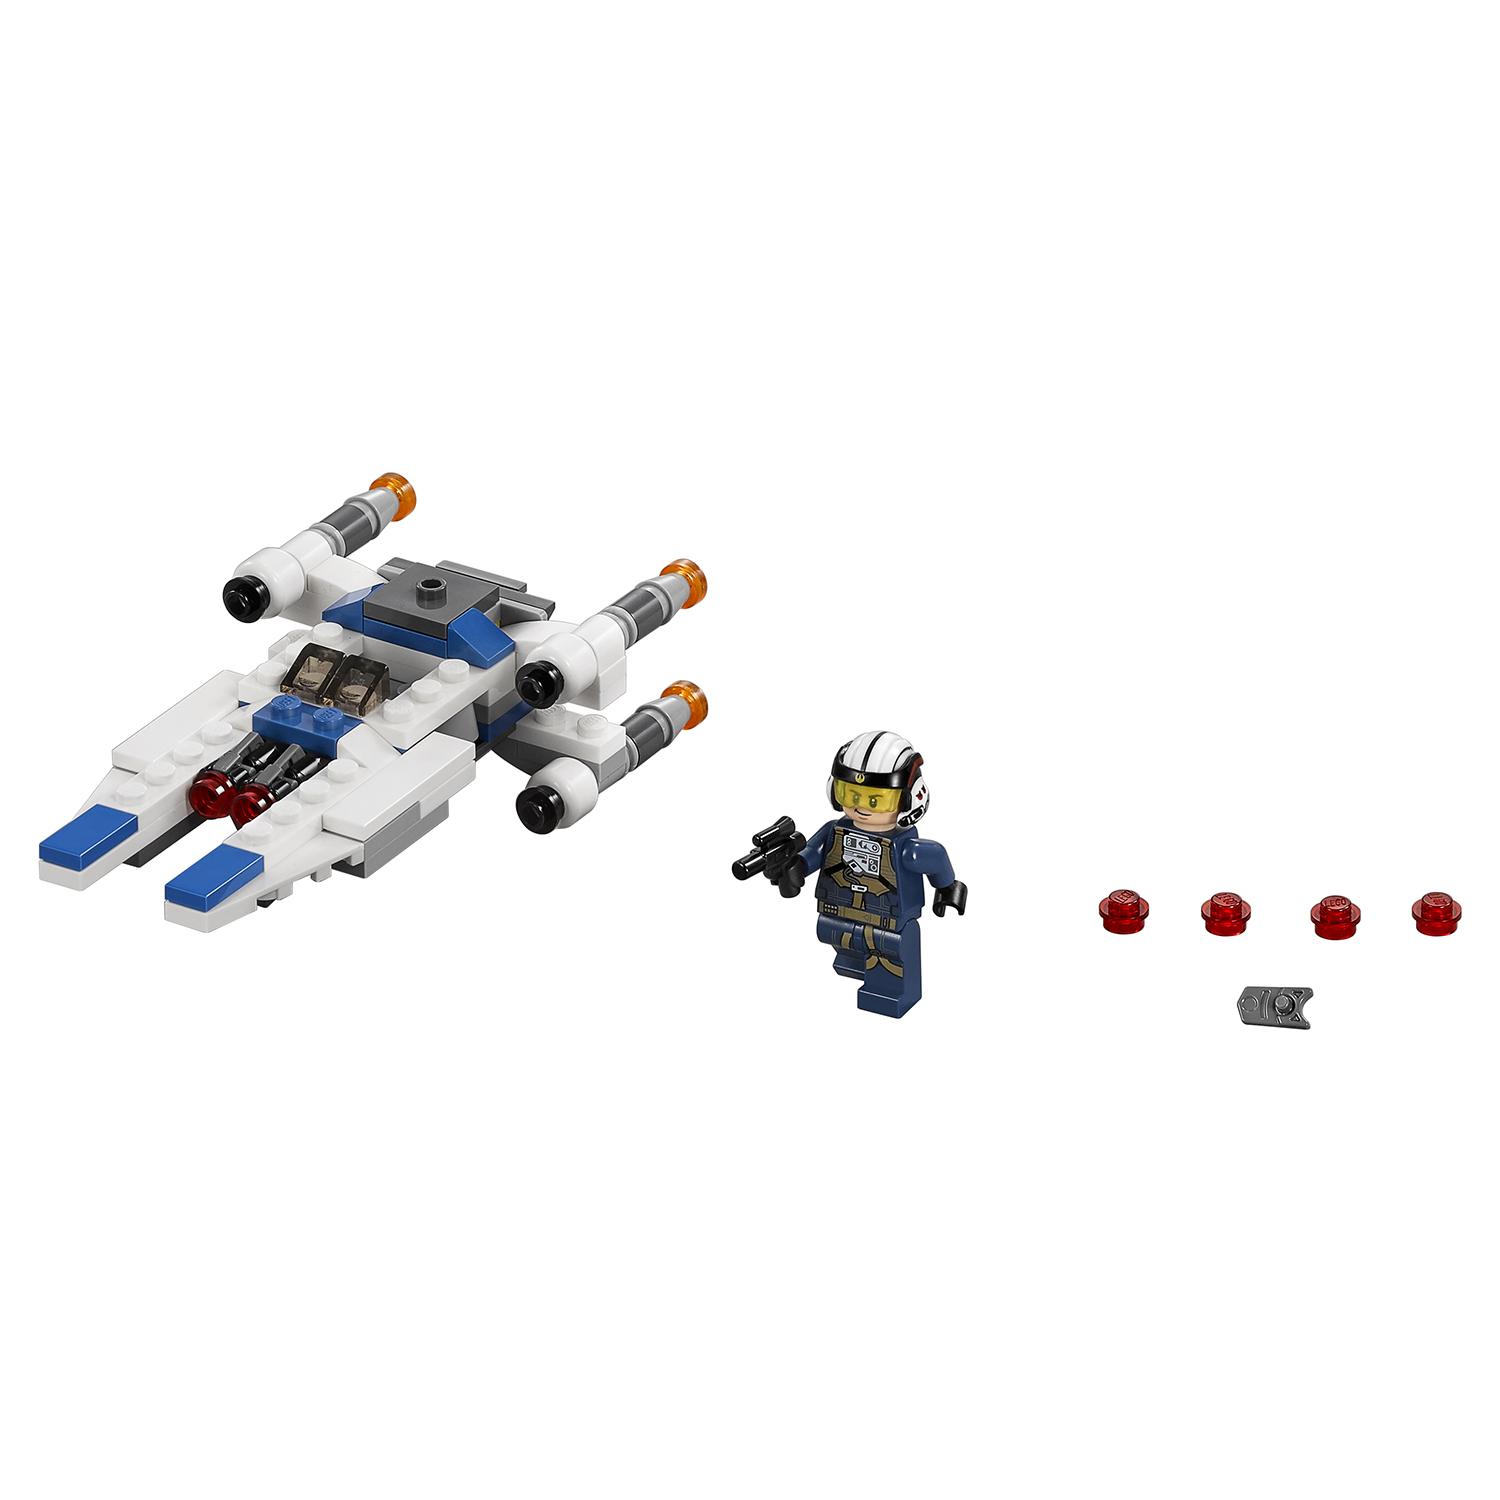 Lego Star Wars 75160 Звездные войны Микроистребитель типа U™